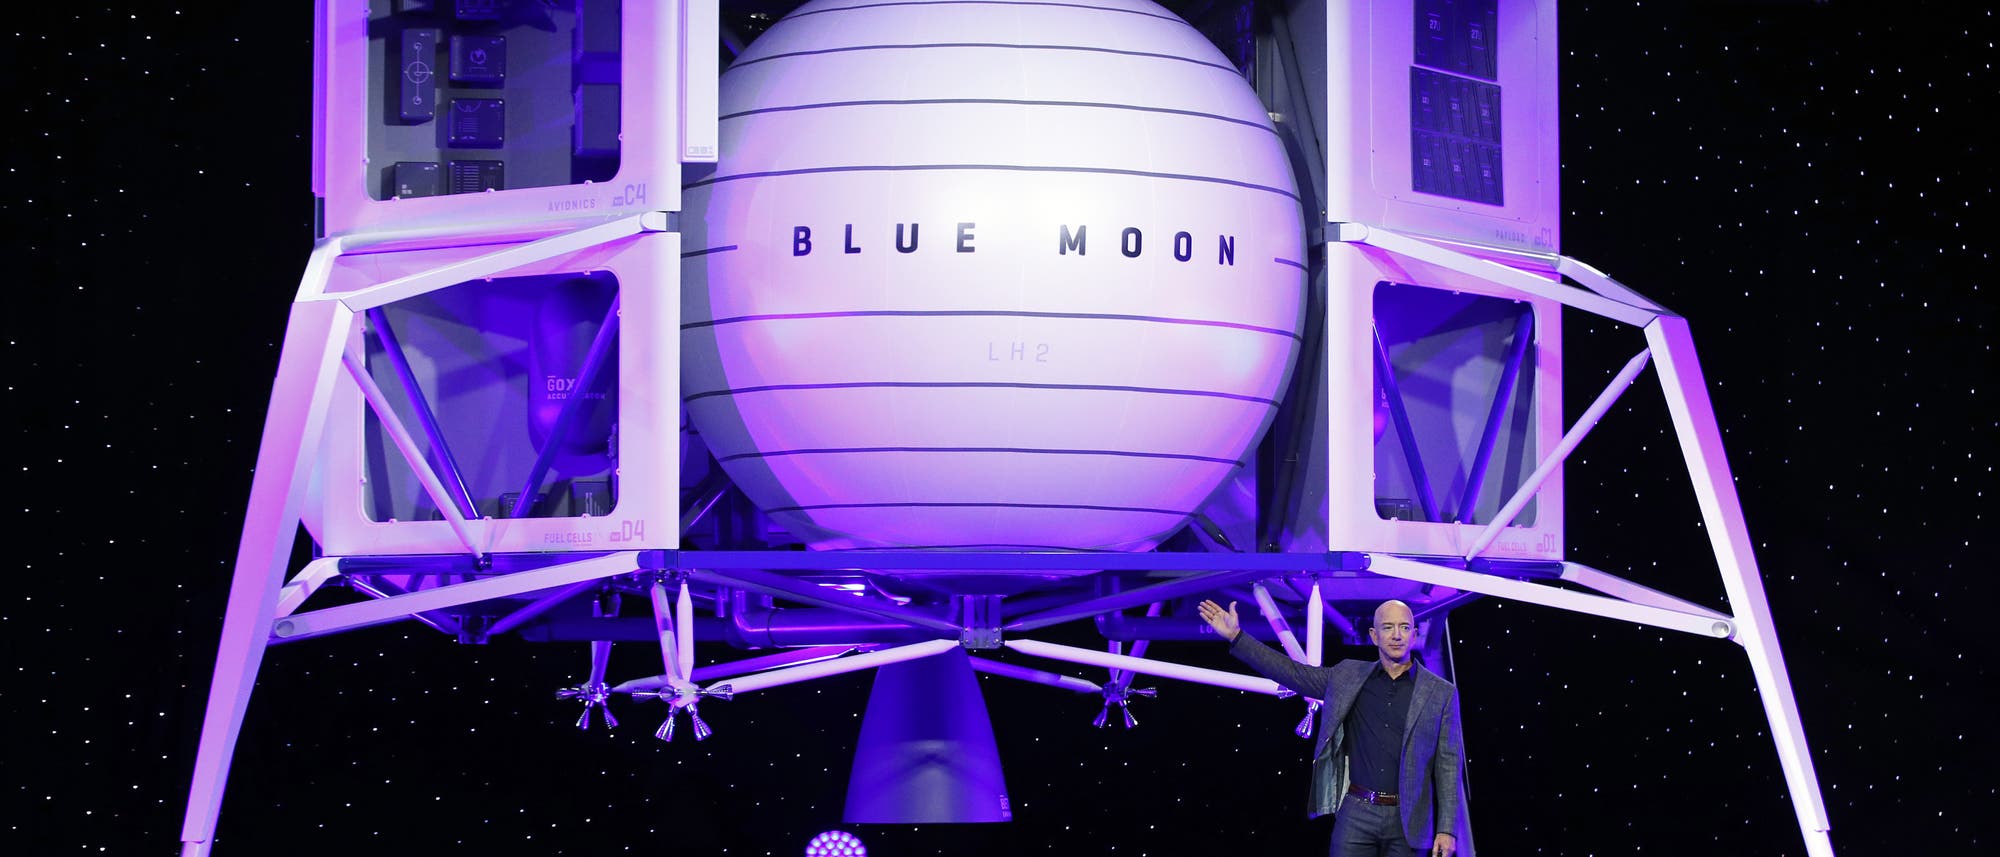 Jeff Bezos bei der Präsentation der Blue Moon Landefähre